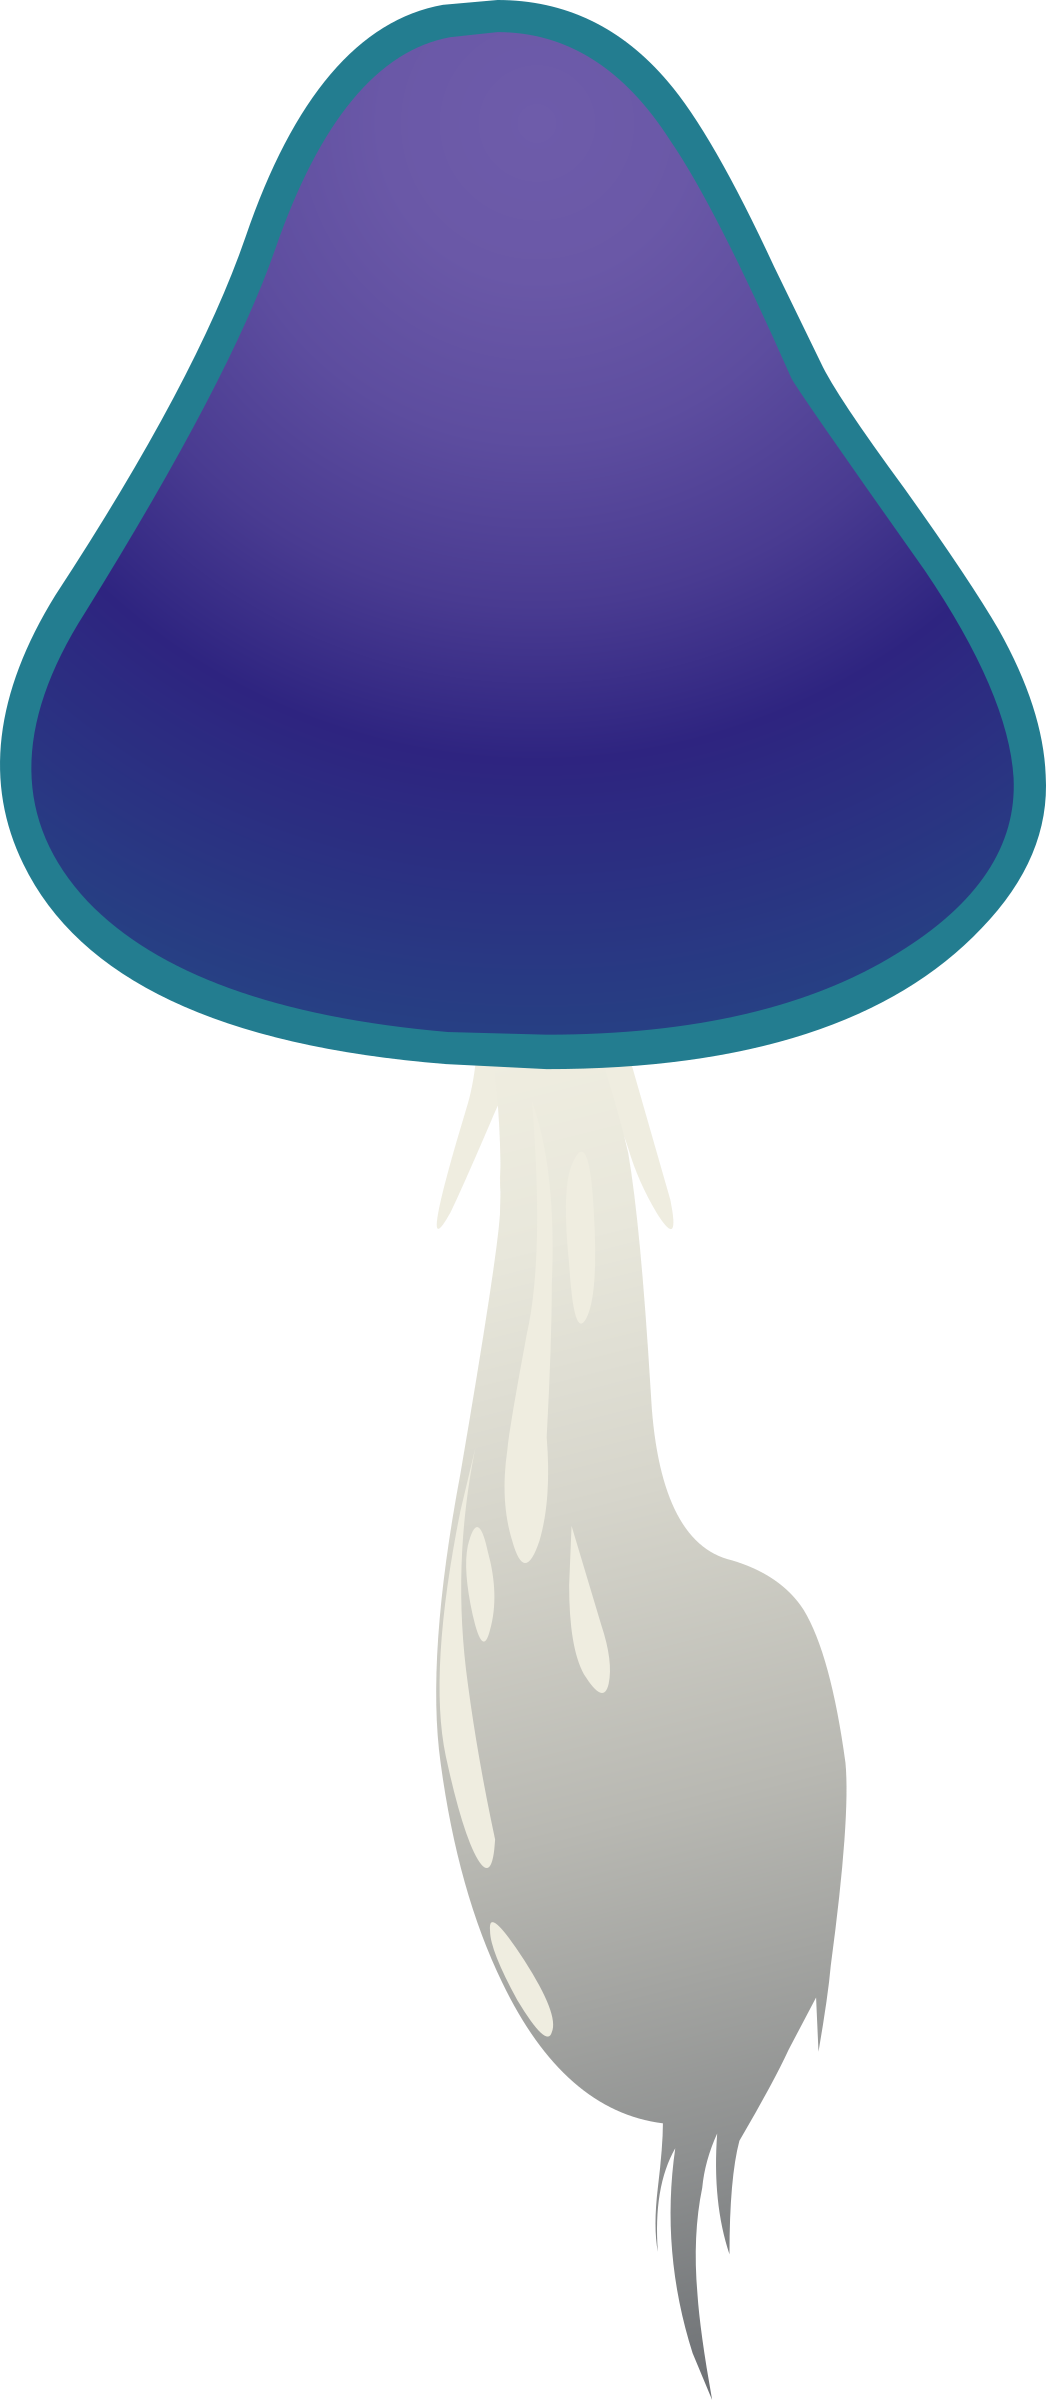 Big Image - Mushroom (1046x2400)